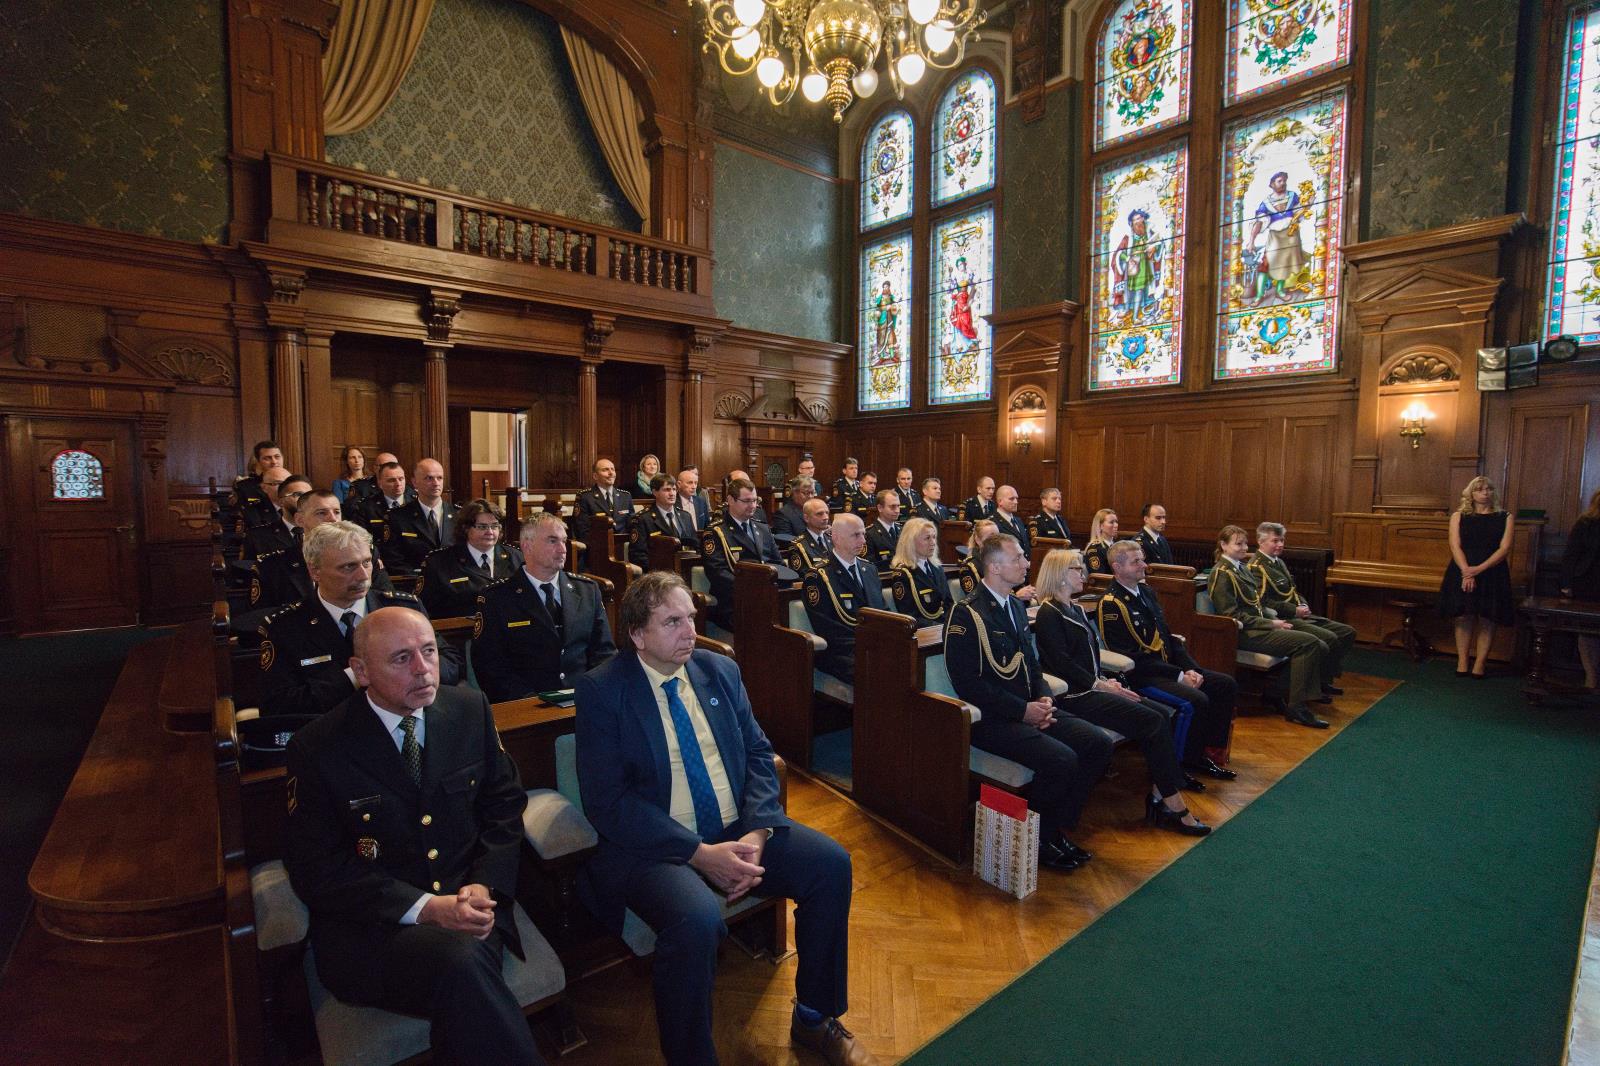 Ceremoniál předávání medailí HZS ČR se uskutečnil v reprezentativních prostorách liberecké radnice